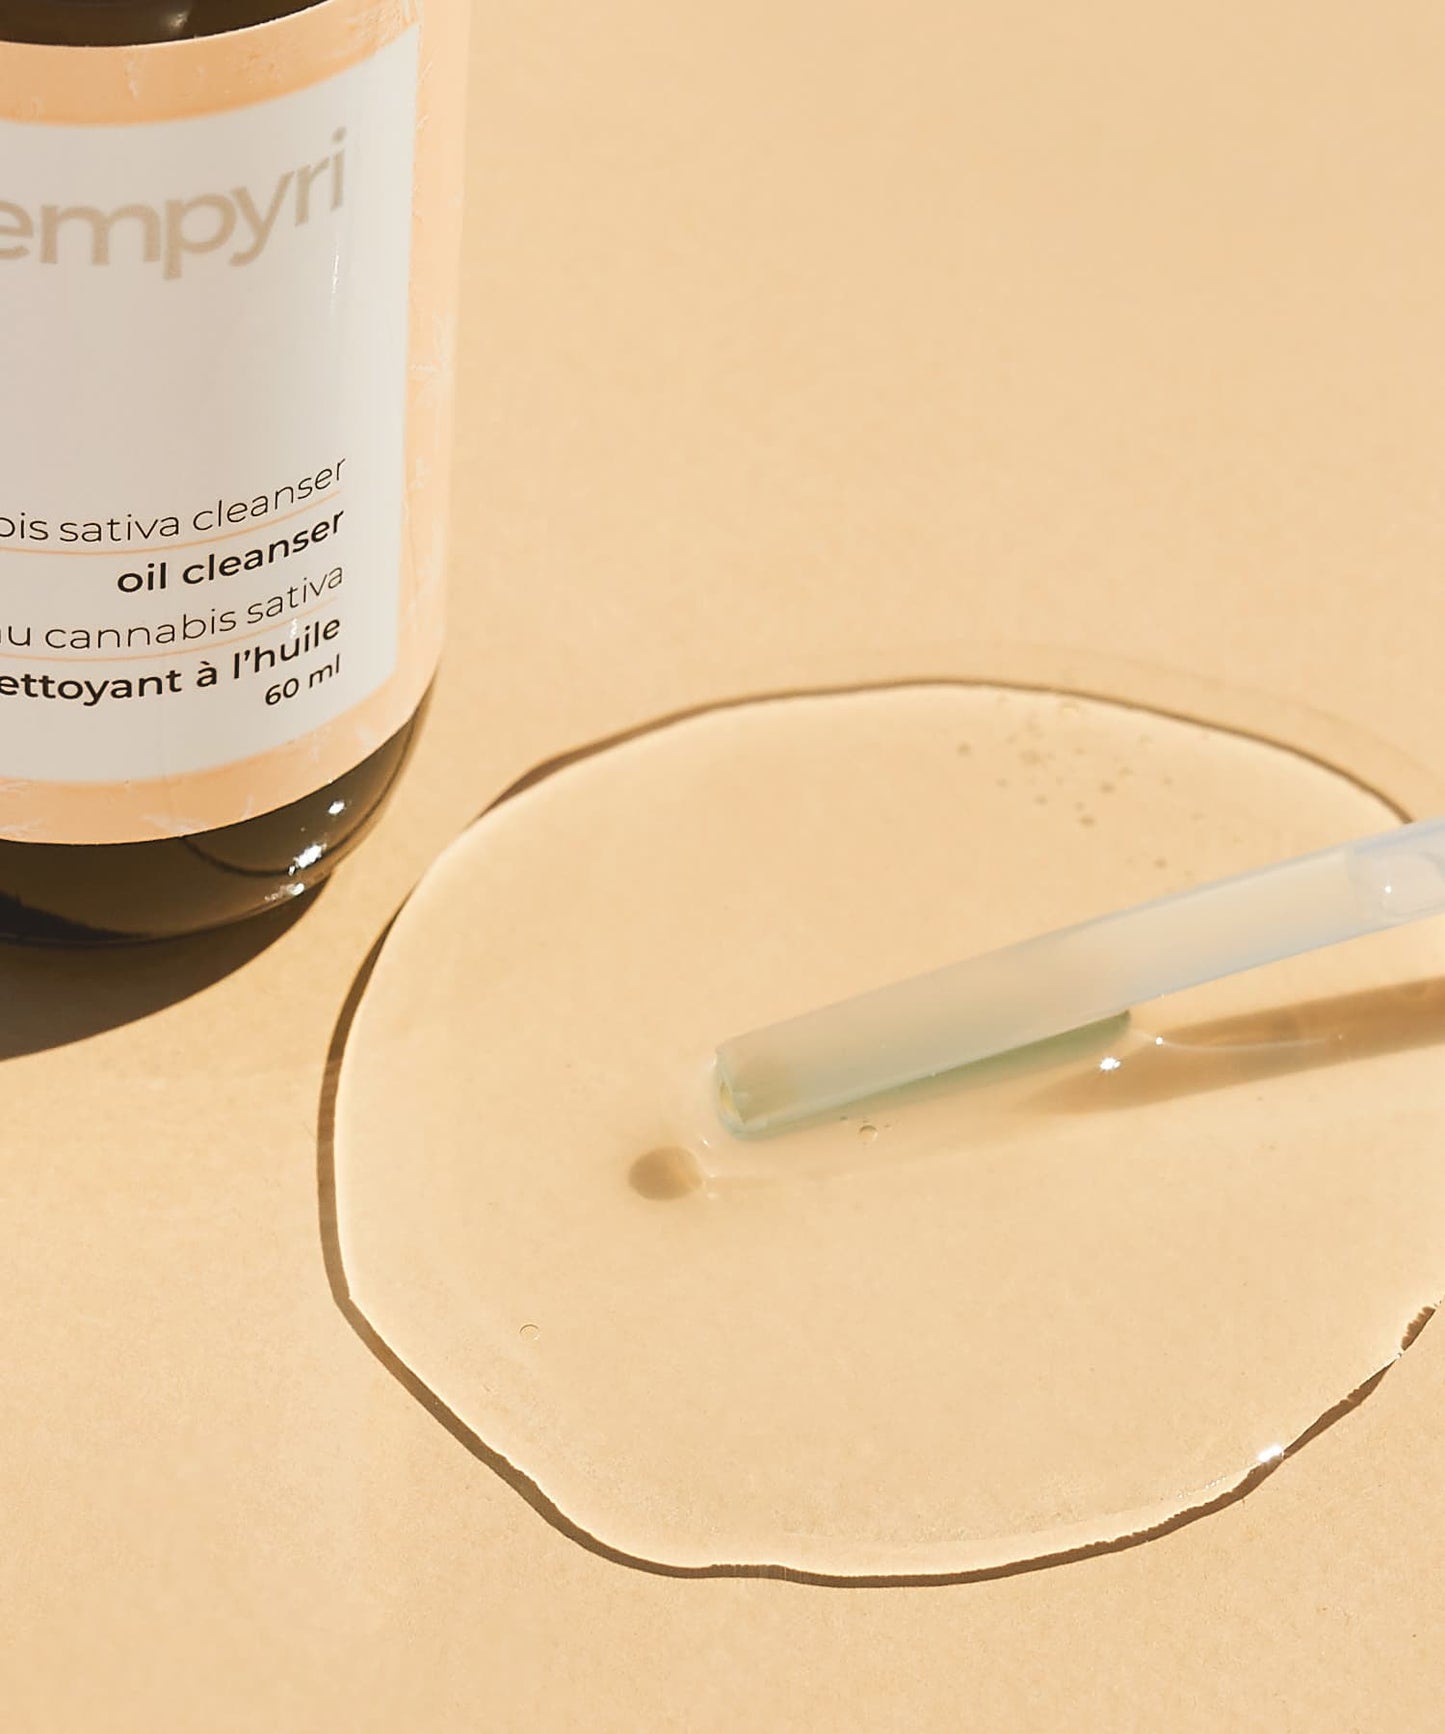 empyri - oil cleansing hemp face wash for acne prone skin_4